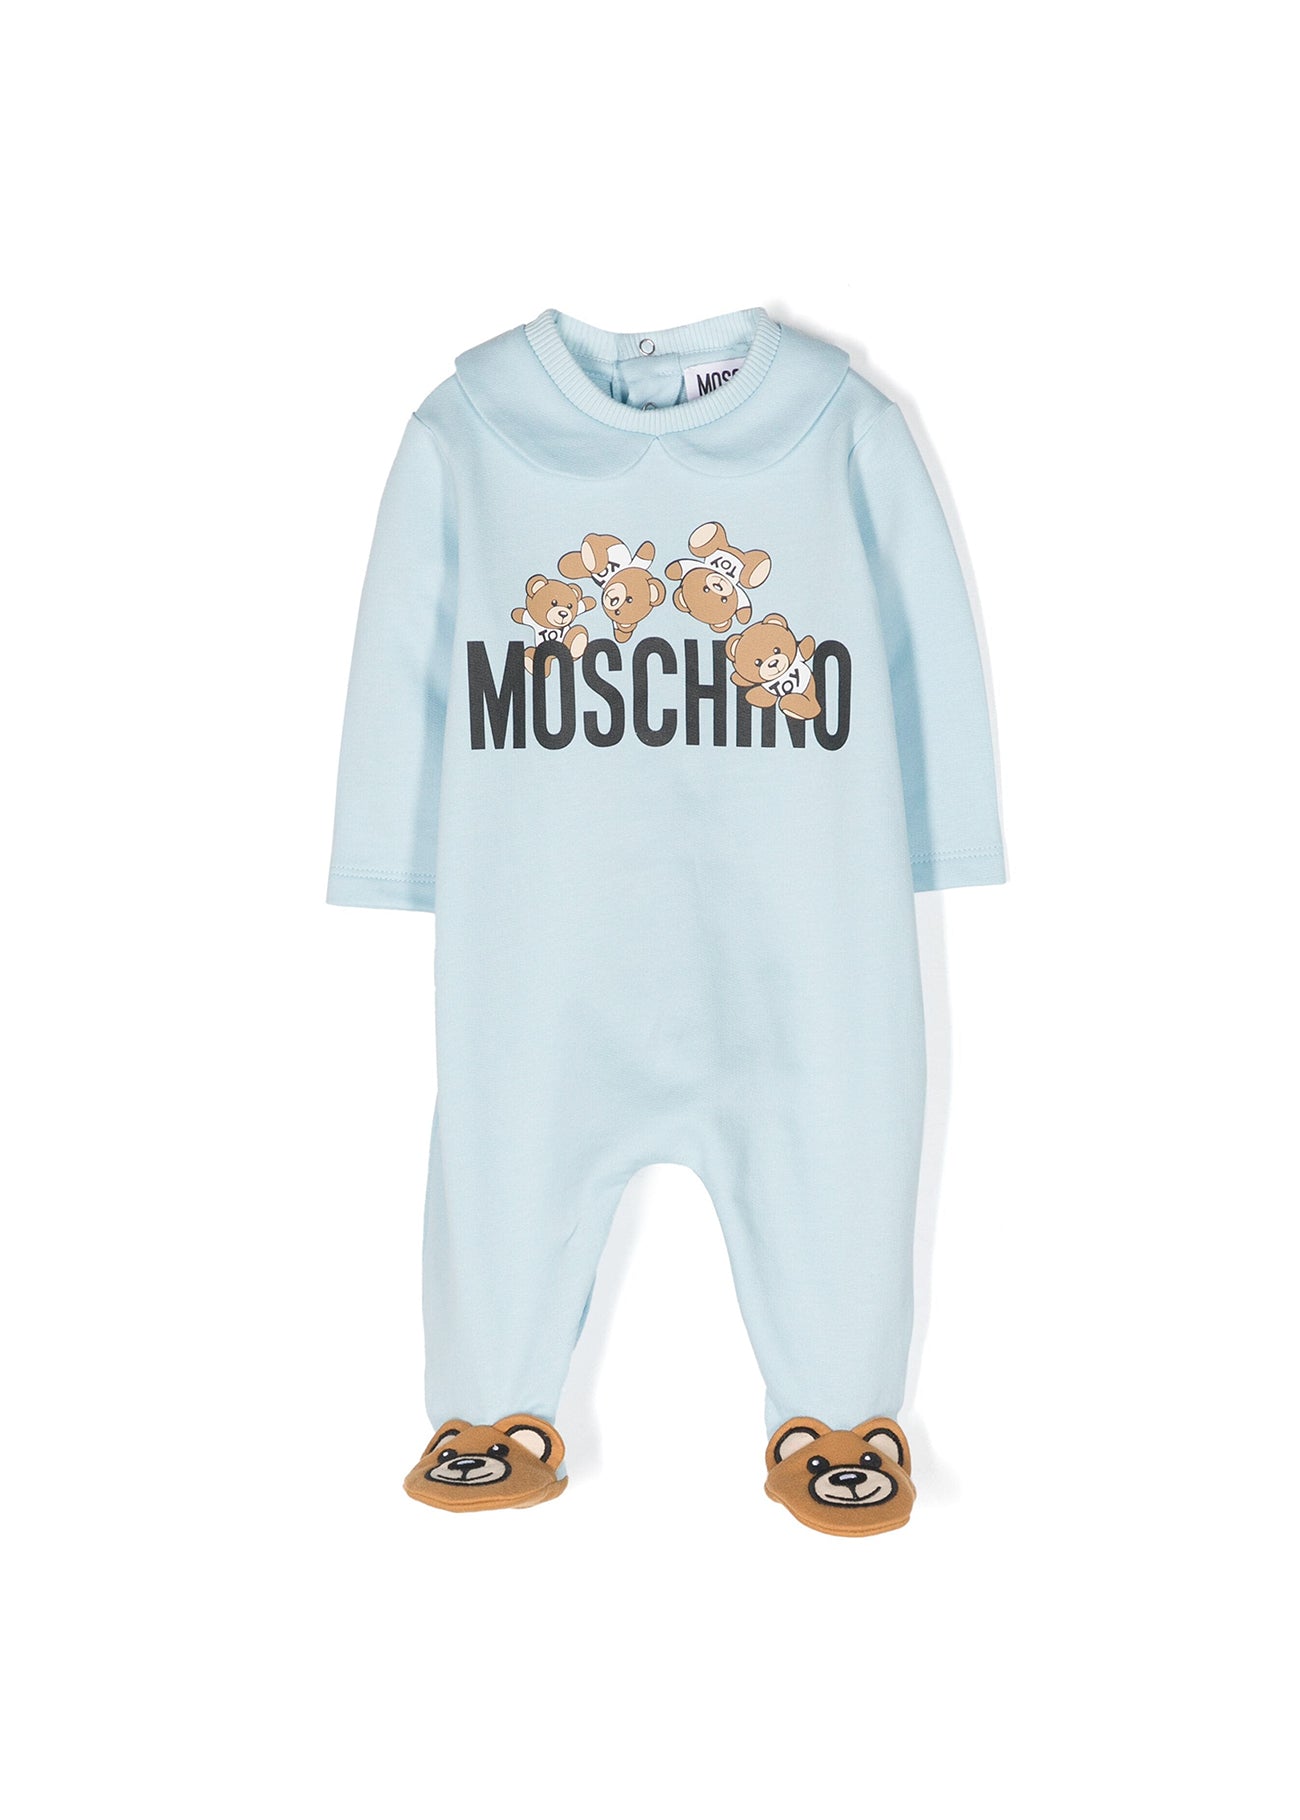 Moschino Kids Tutina Celeste con Motivo Teddy Bear